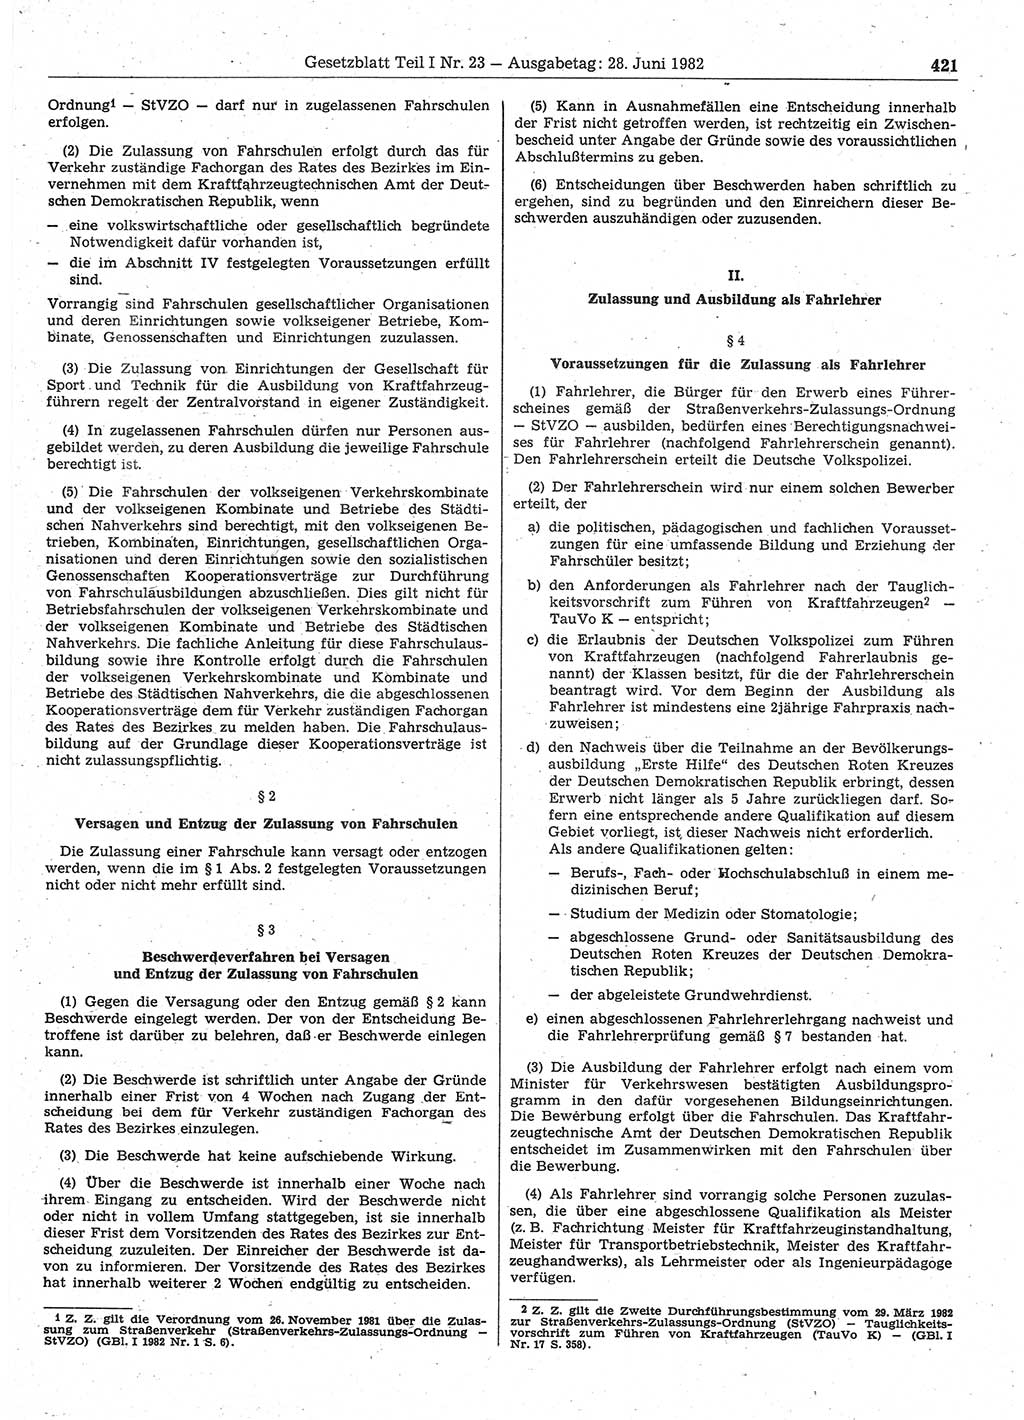 Gesetzblatt (GBl.) der Deutschen Demokratischen Republik (DDR) Teil Ⅰ 1982, Seite 421 (GBl. DDR Ⅰ 1982, S. 421)